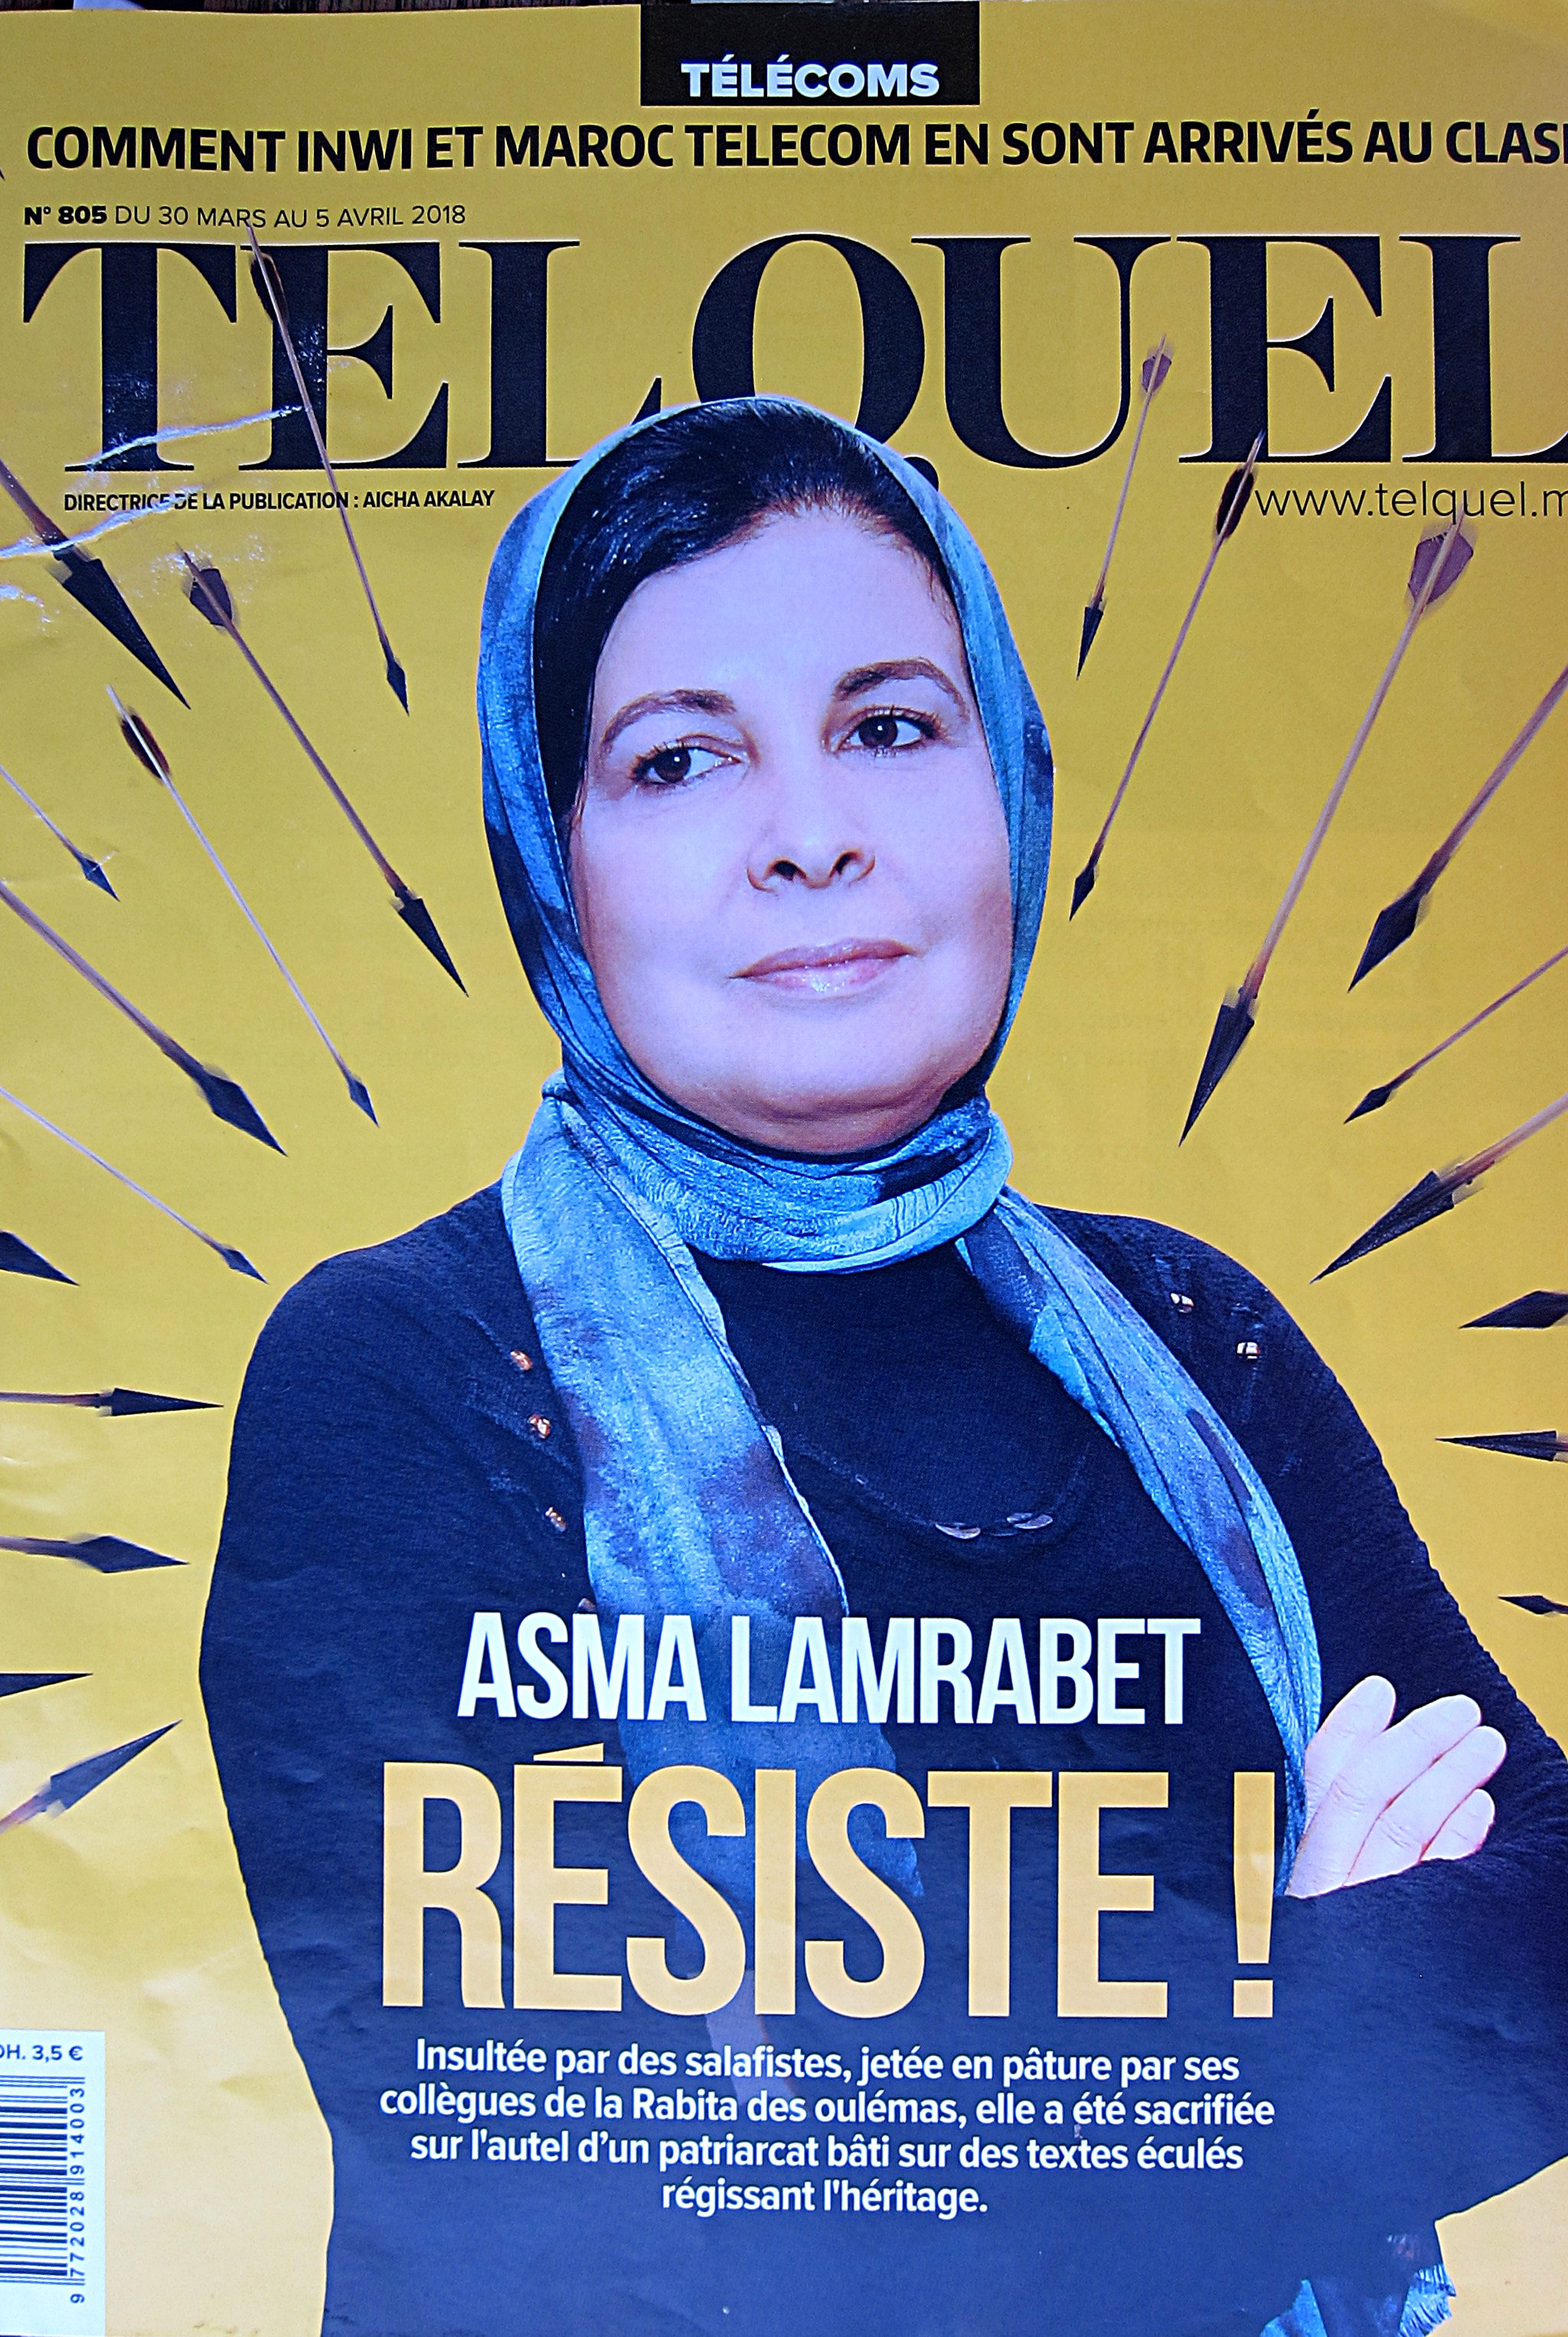 Titelseite der marokkanischen Zeitschrift "TelQuel" mit dem Aufmacher über Asma Lamrabet